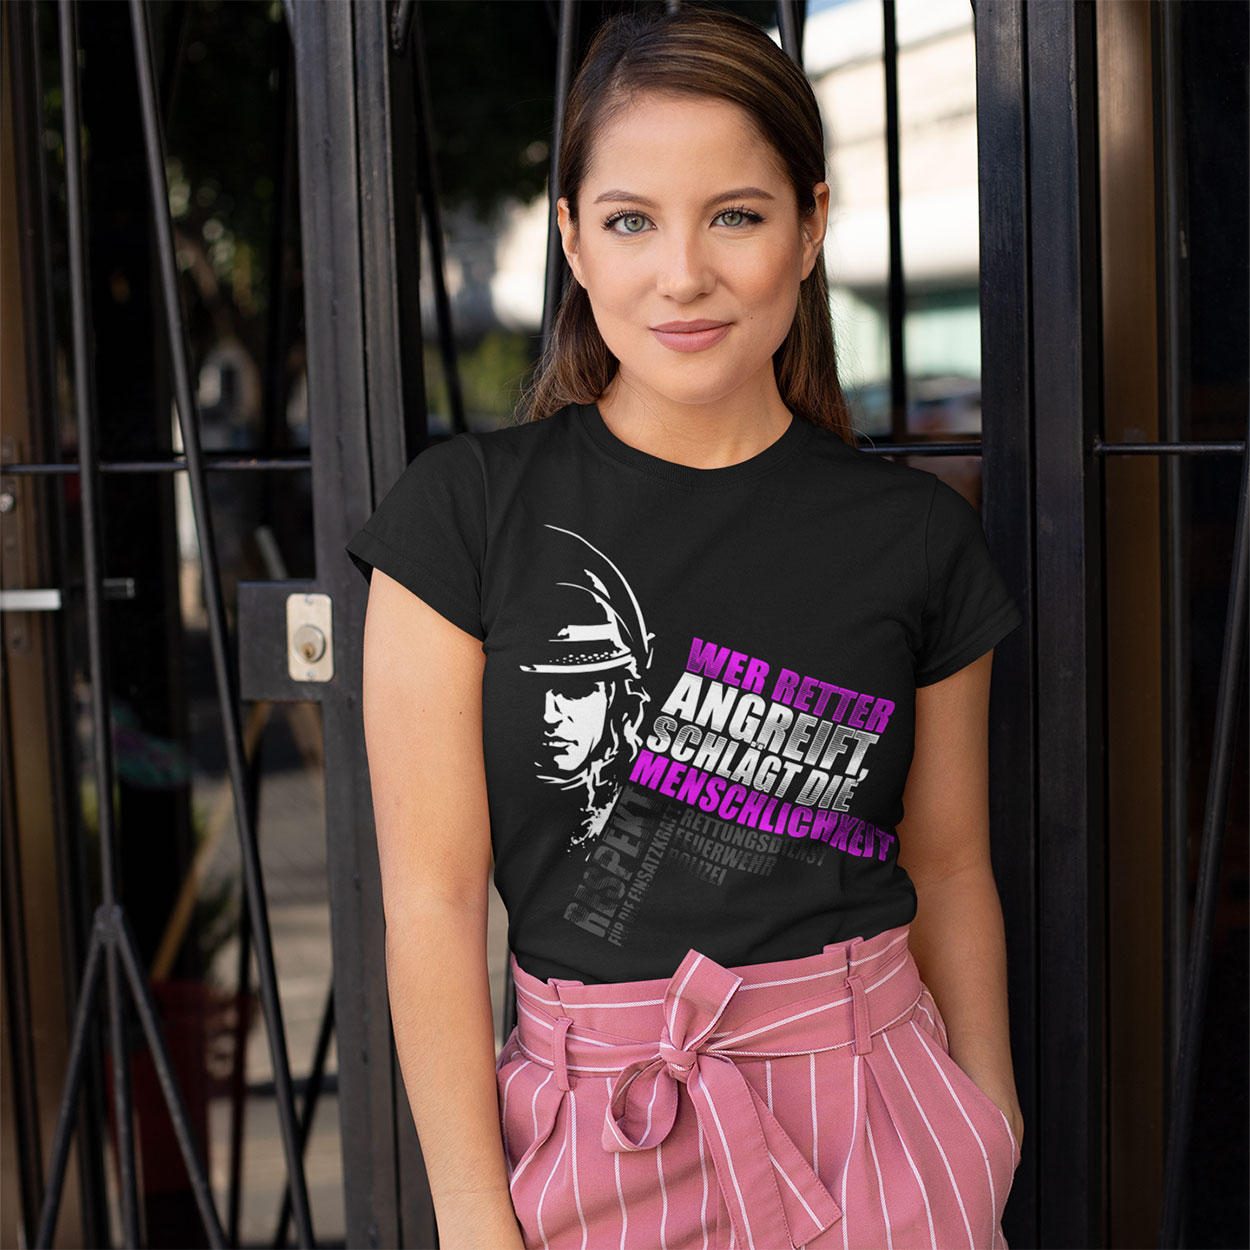 Wer Retter angreift - Frauen T-Shirt